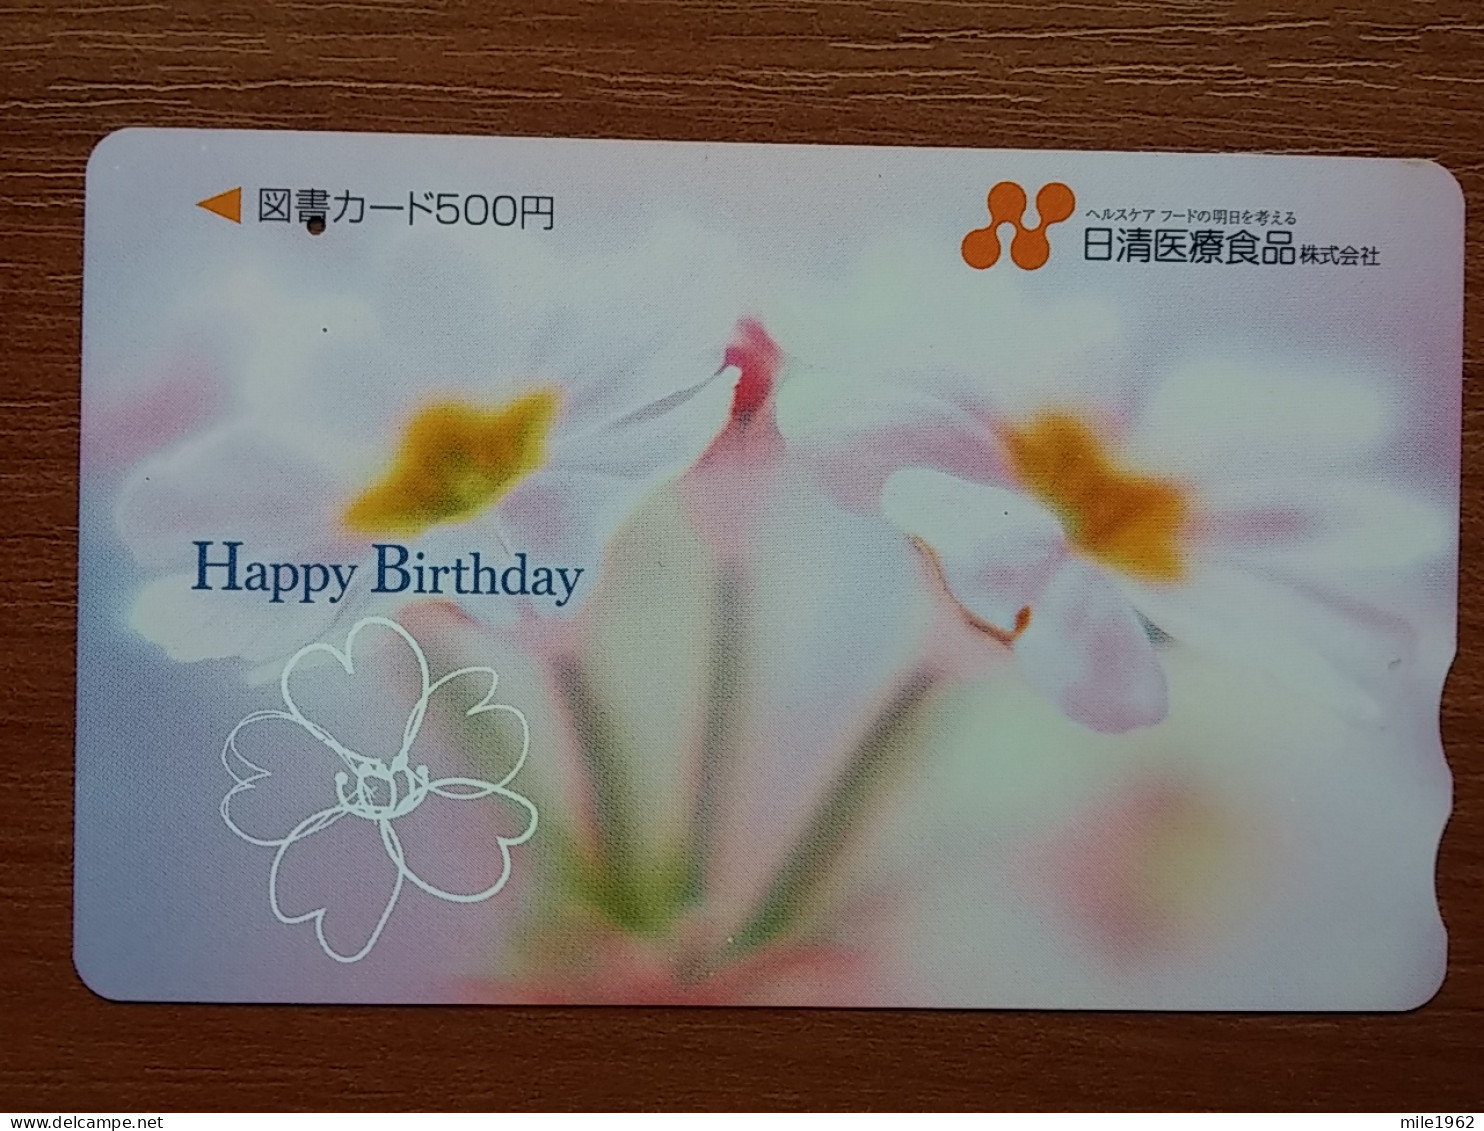 T-446 - JAPAN, Japon, Nipon, Carte Prepayee, Prepaid Card, FLOWER, FLEUR - Bloemen